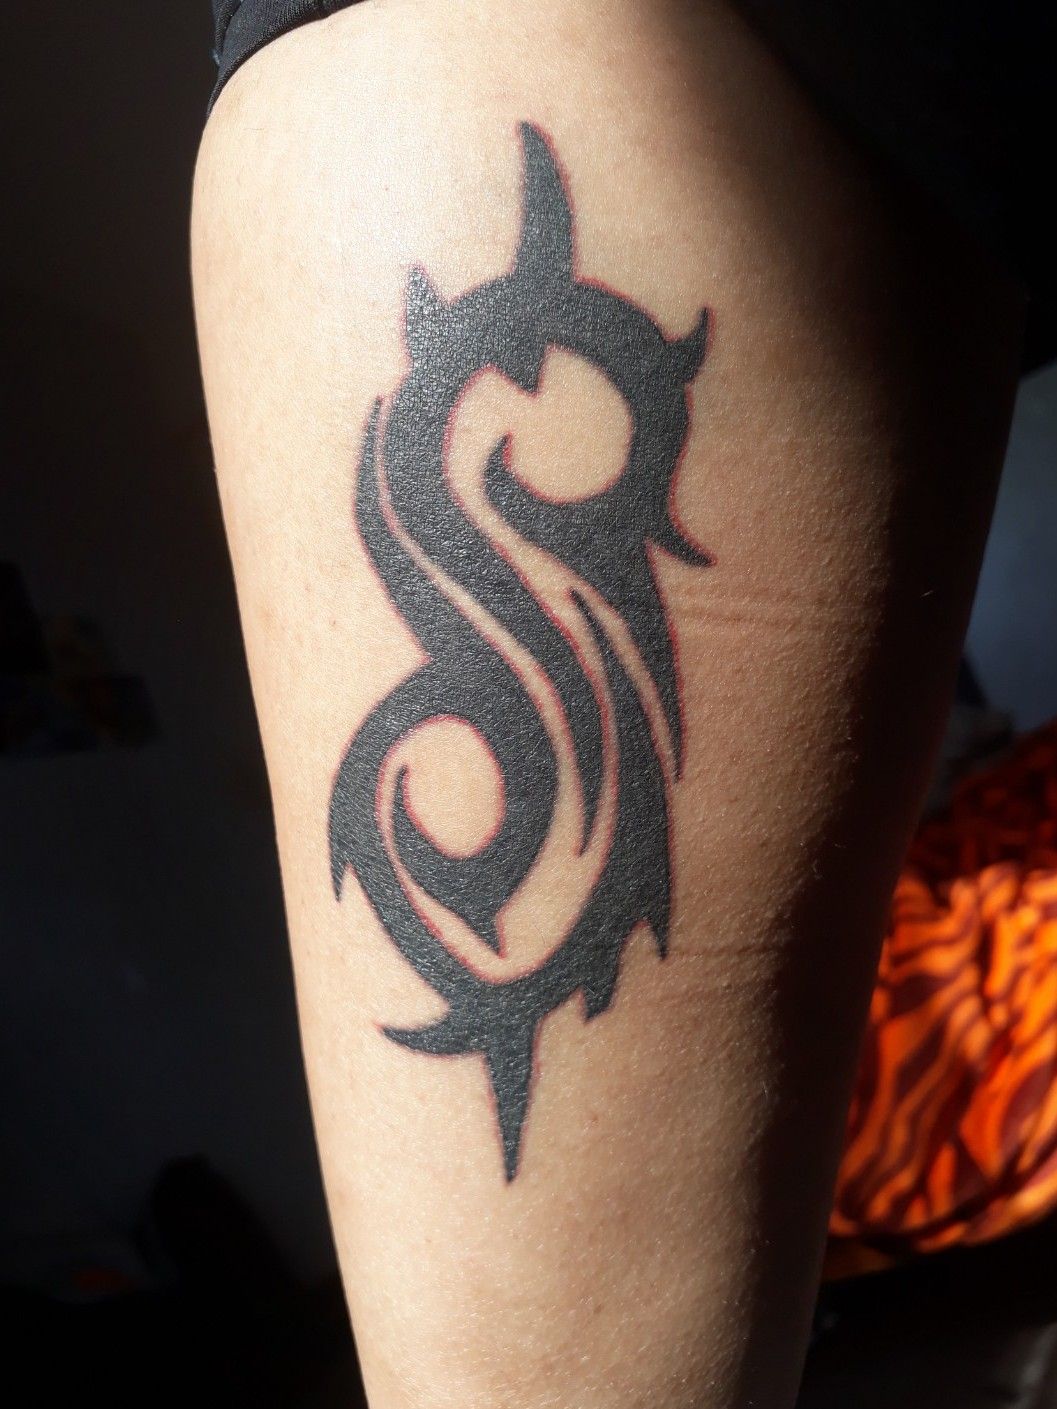 Slipknot Tattoo by sk8ersoul on DeviantArt